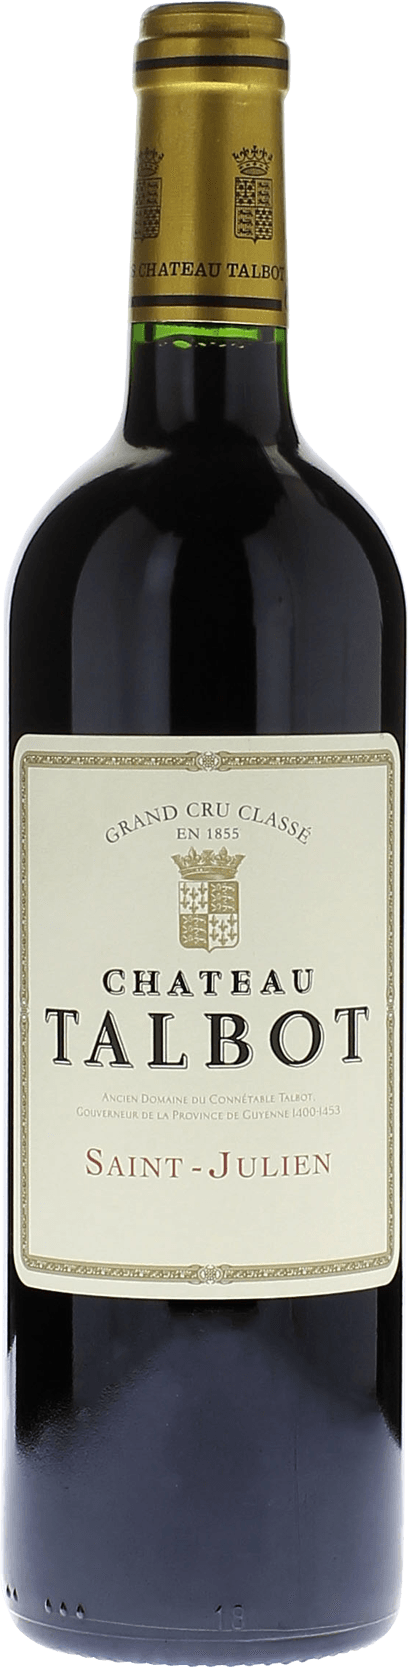 Talbot 2003 4me Grand cru class Saint-Julien, Bordeaux rouge